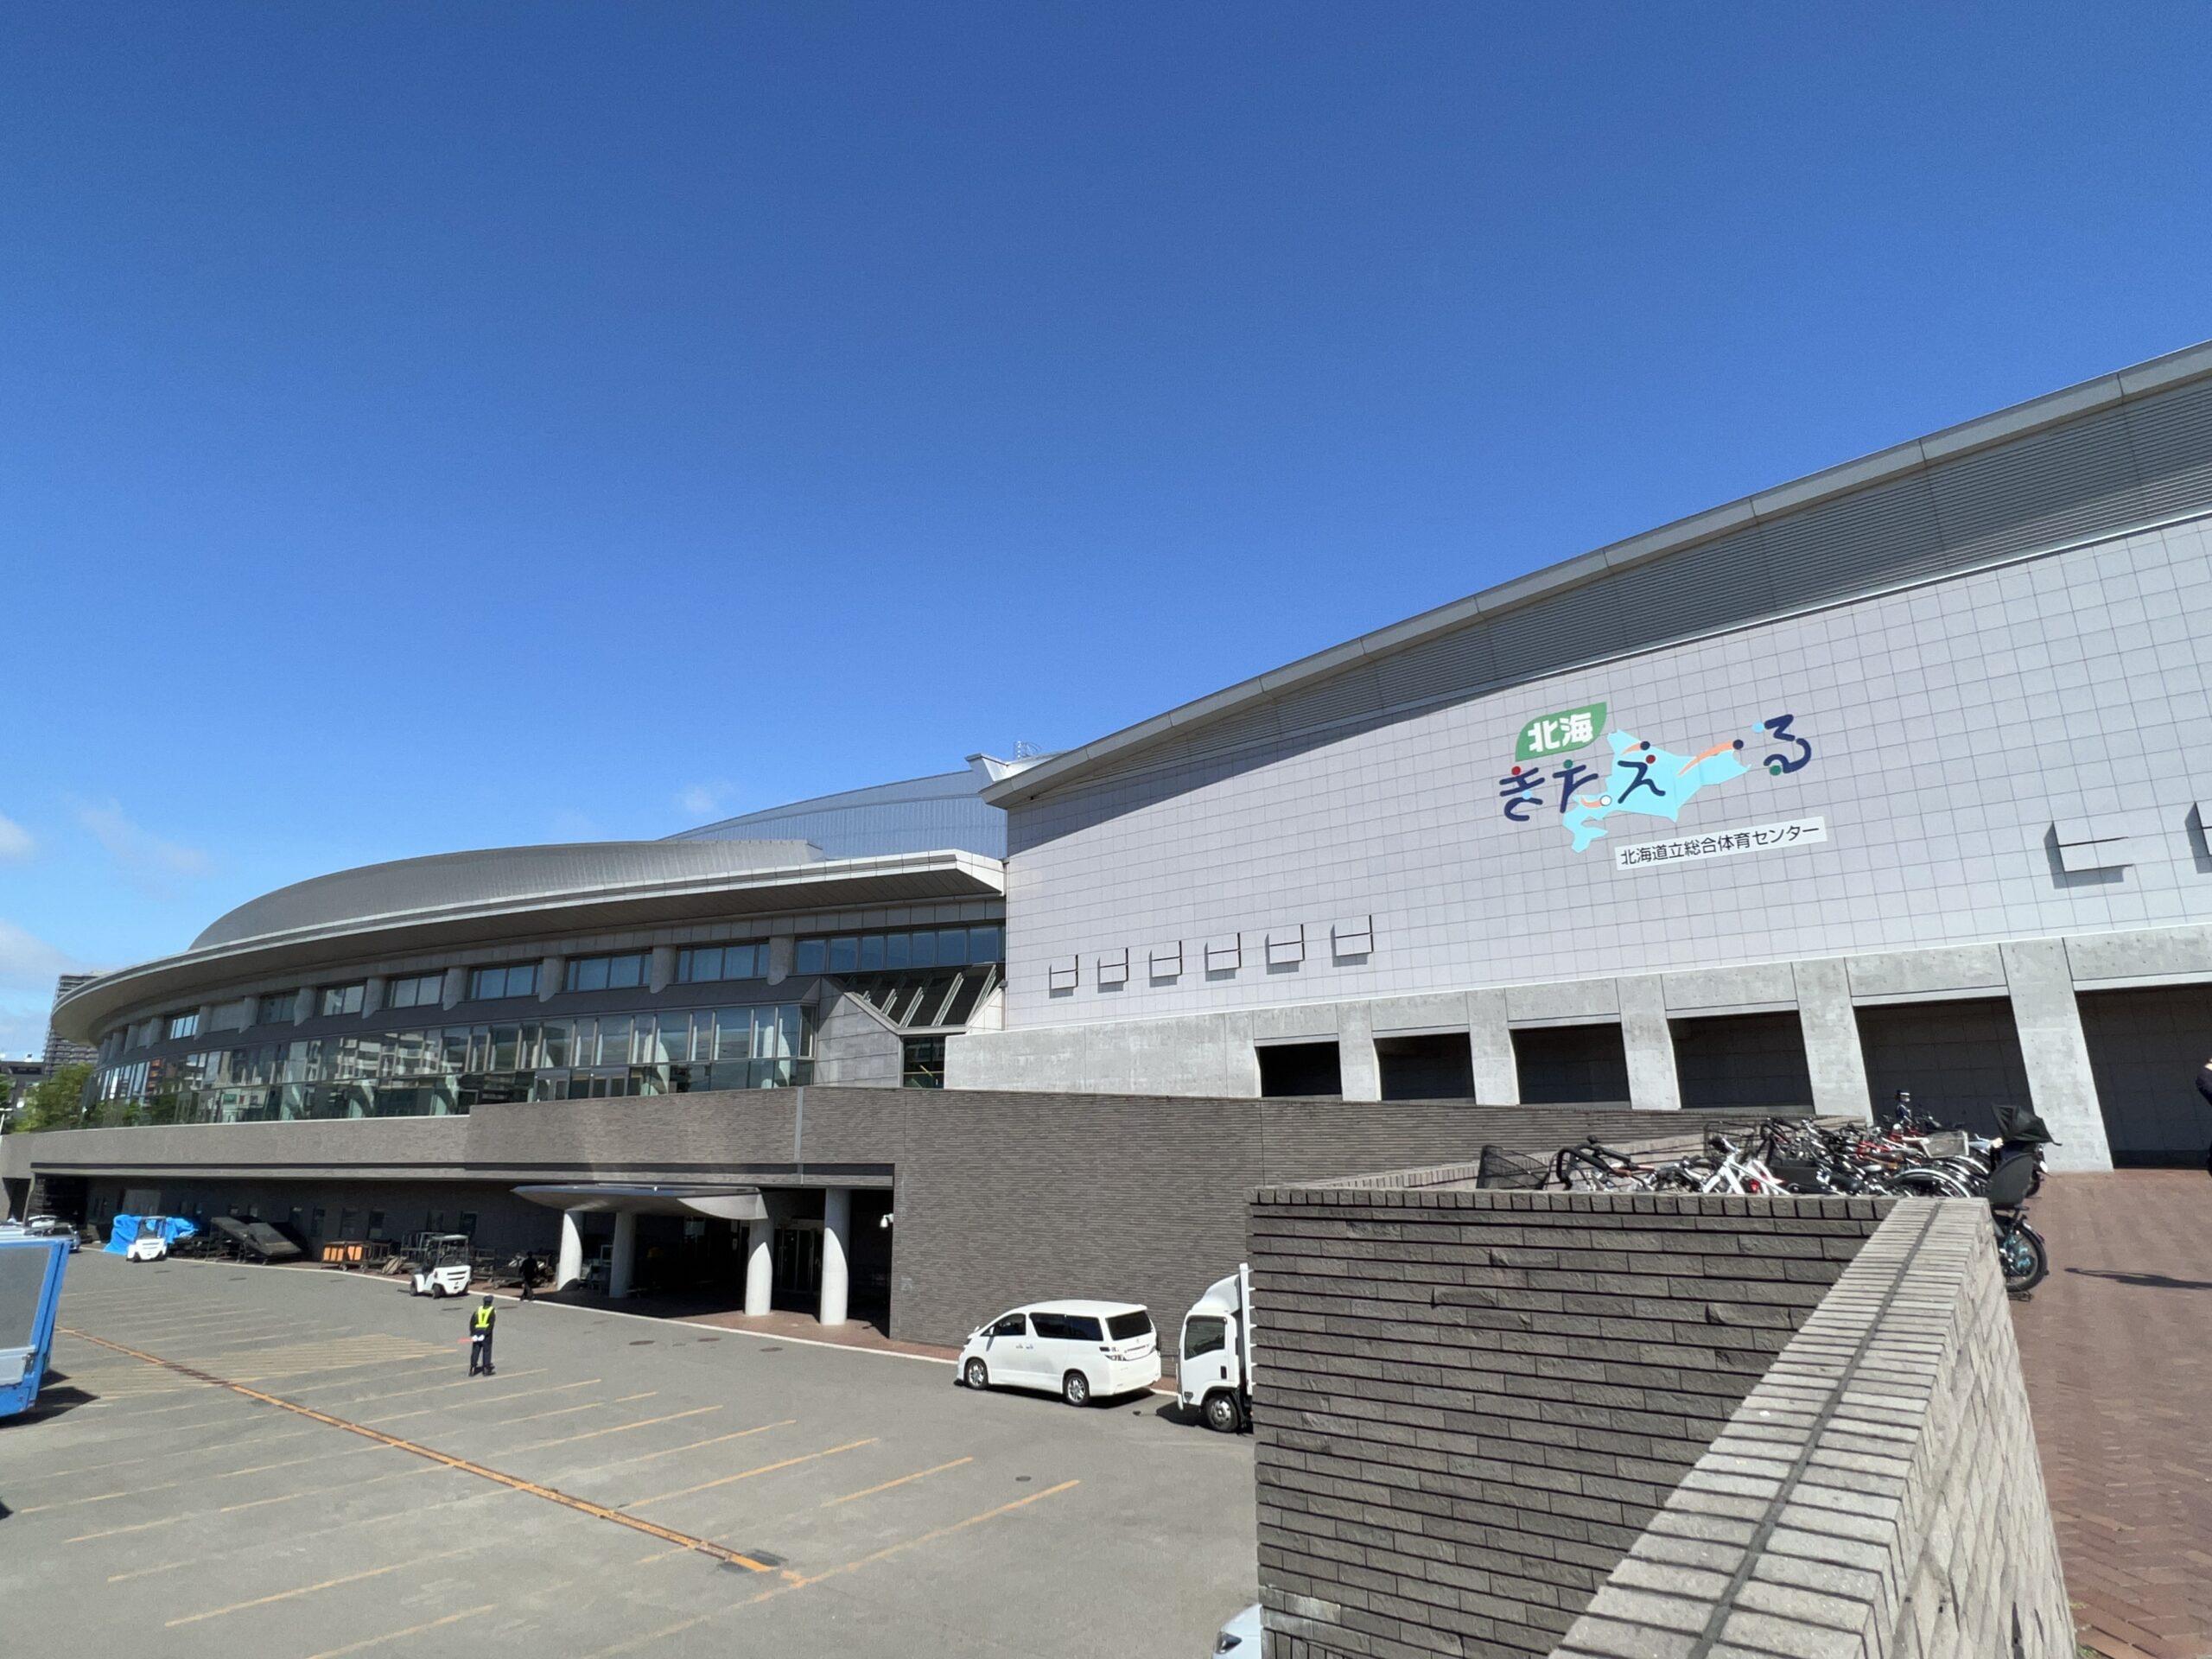 『B'z LIVE-GYM 2022 -Highway X-』北海道立総合体育センター 北海きたえーる公演1日目の会場外観の写真